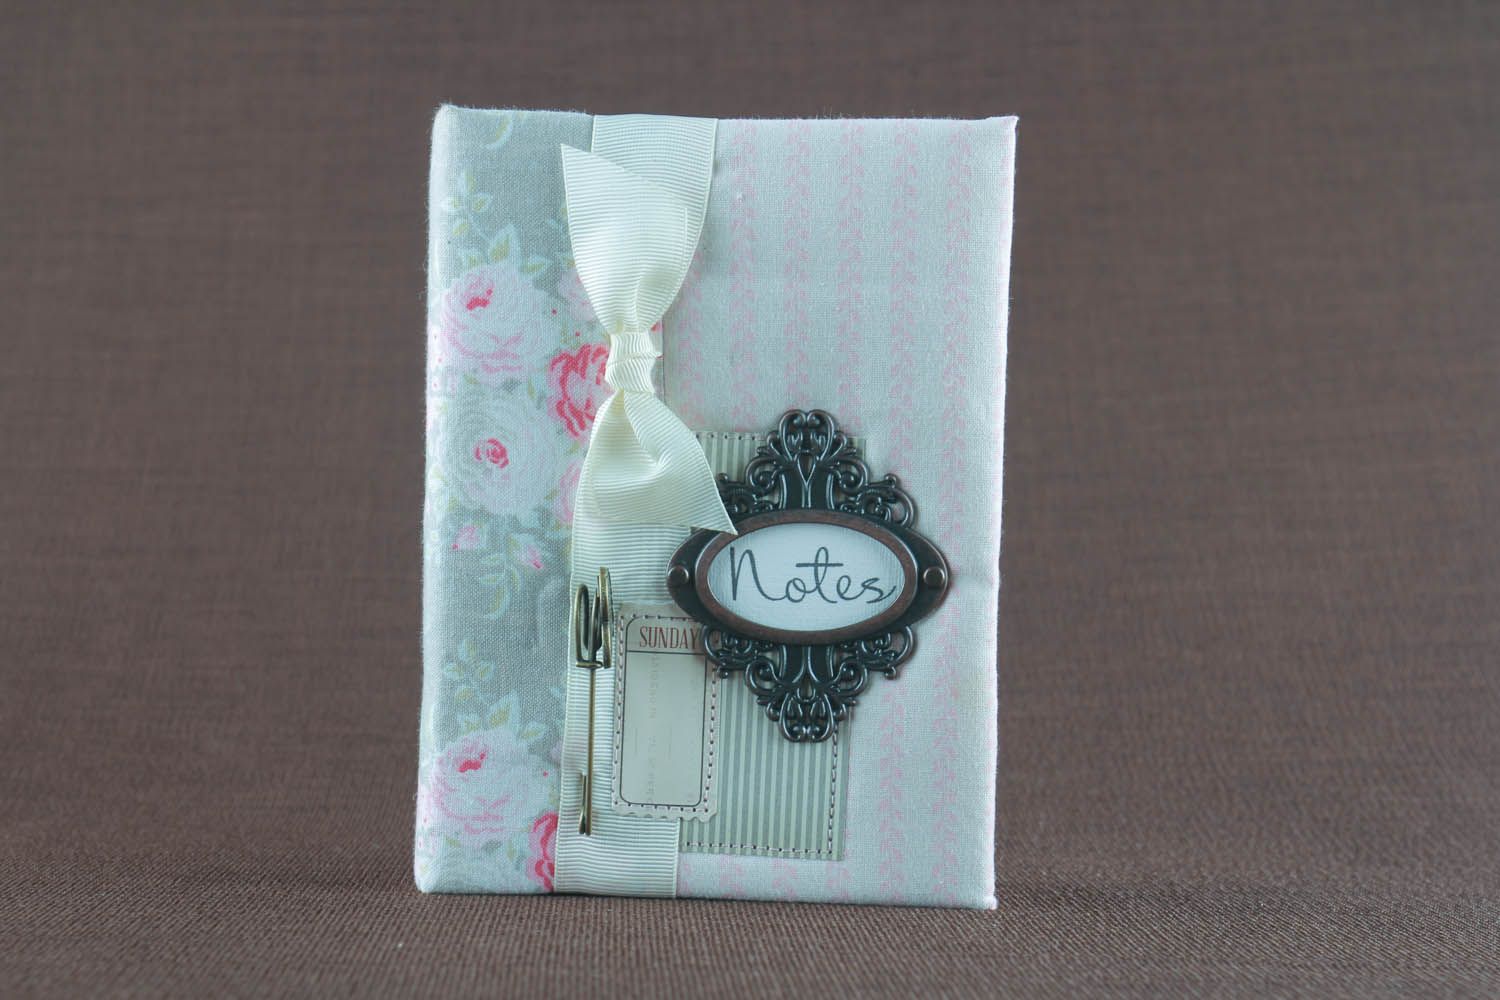 Bloco de notas feito à mão com capa de tecido com cheiro  decorado com elementos decorativos foto 2